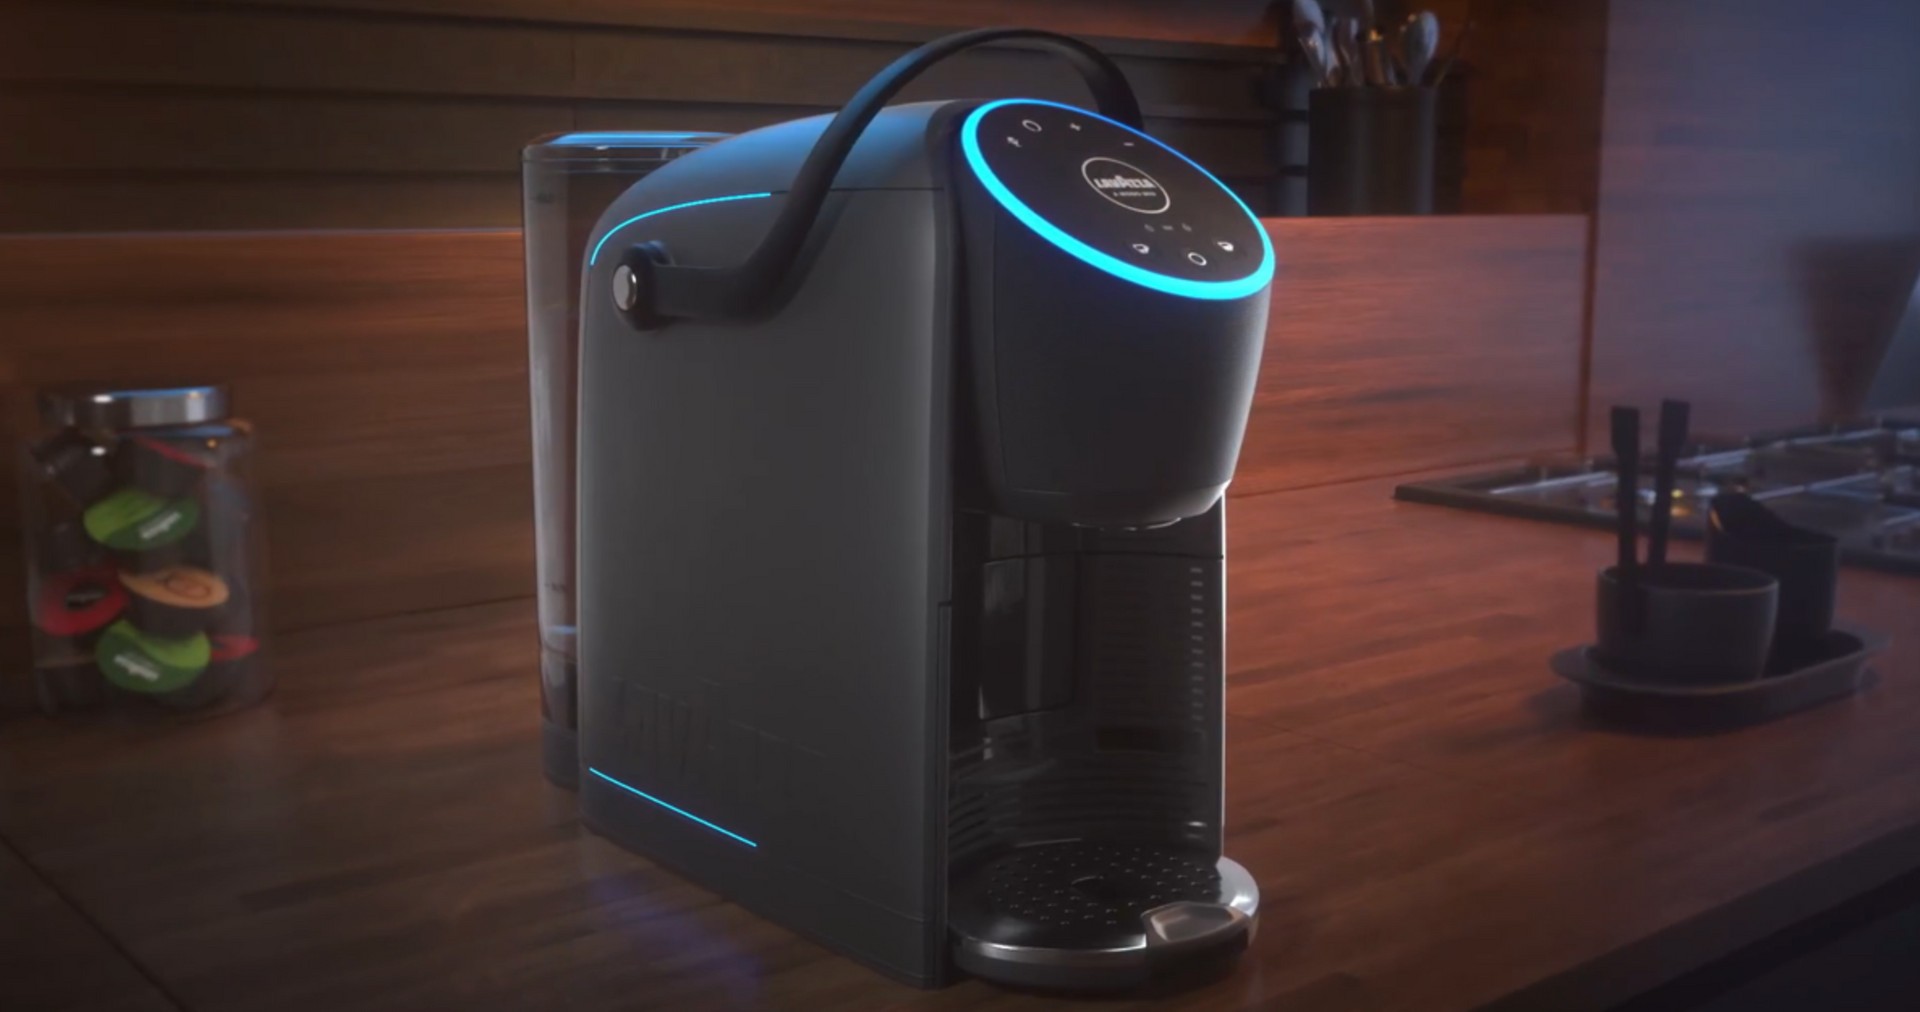 macchina Lavazza con Alexa integrata - Elettrodomestici In vendita a Torino